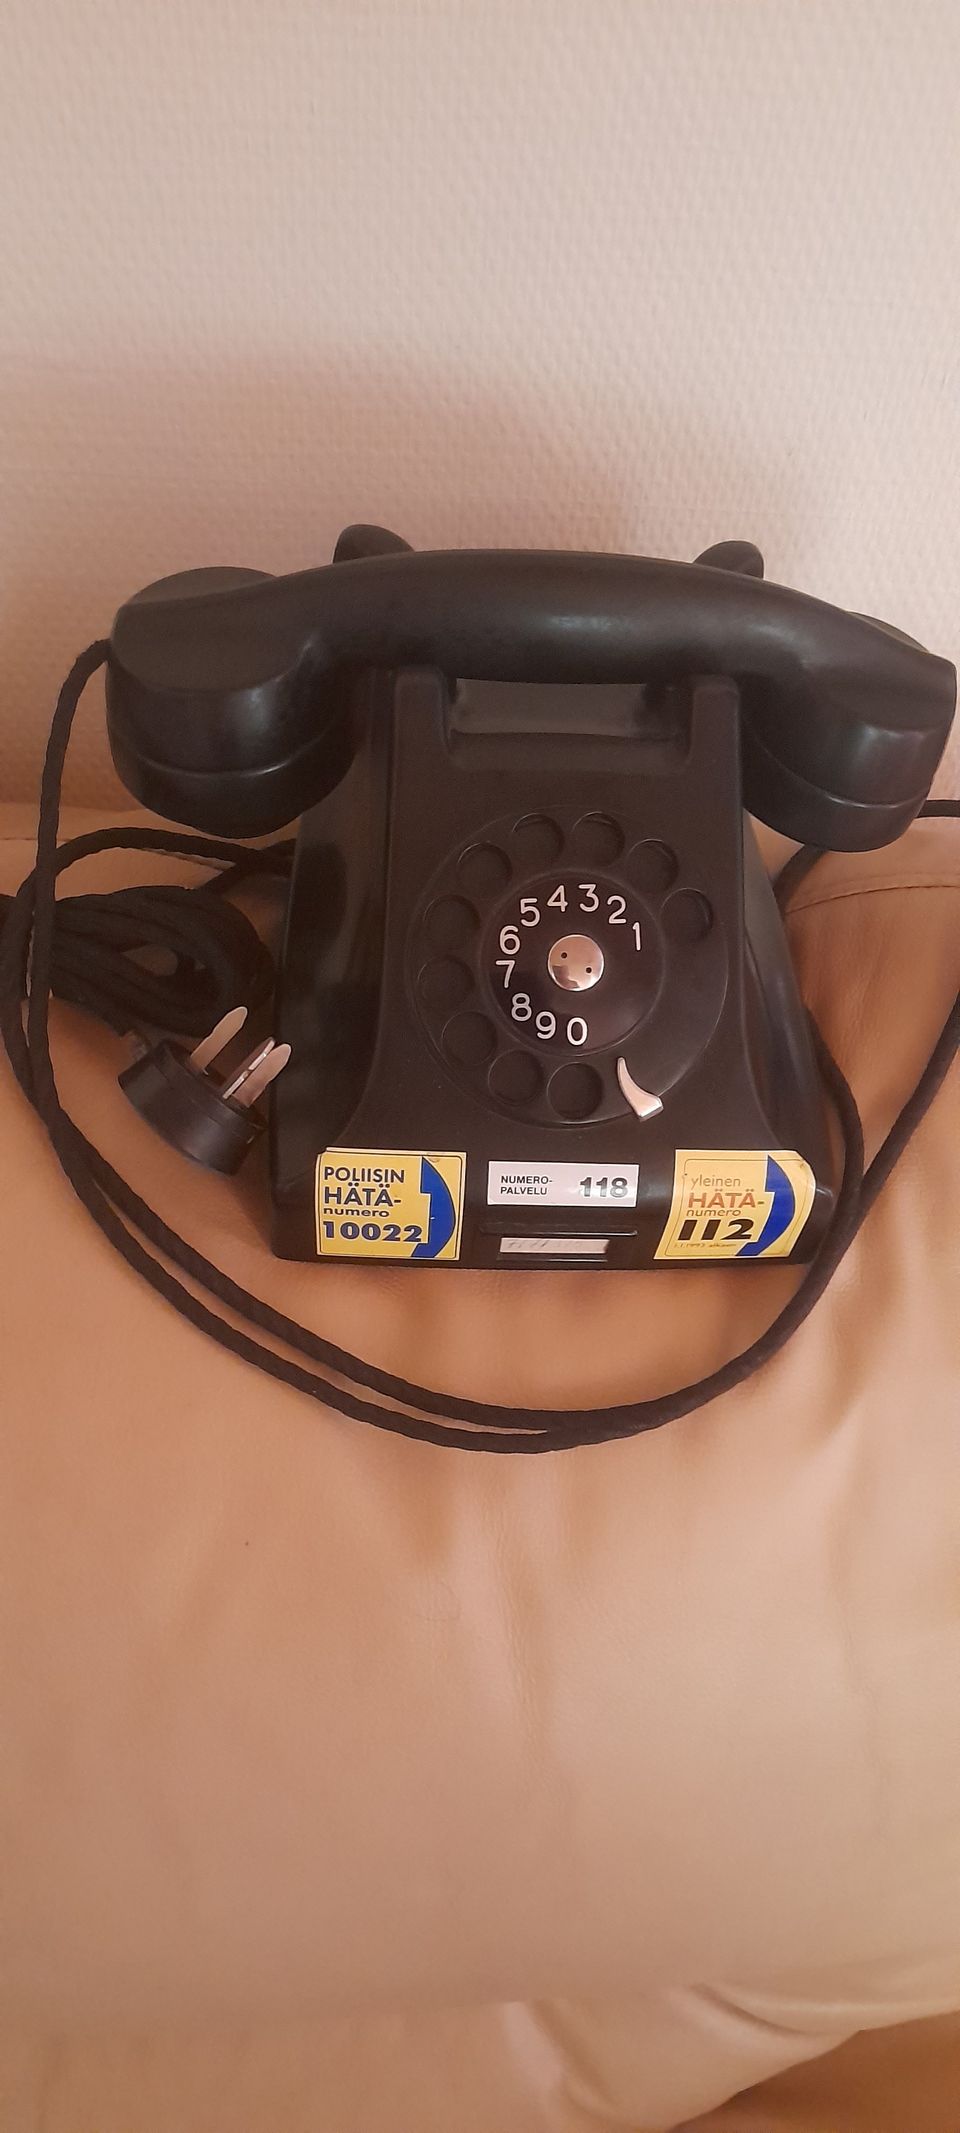 Vanha puhelin Ericsson